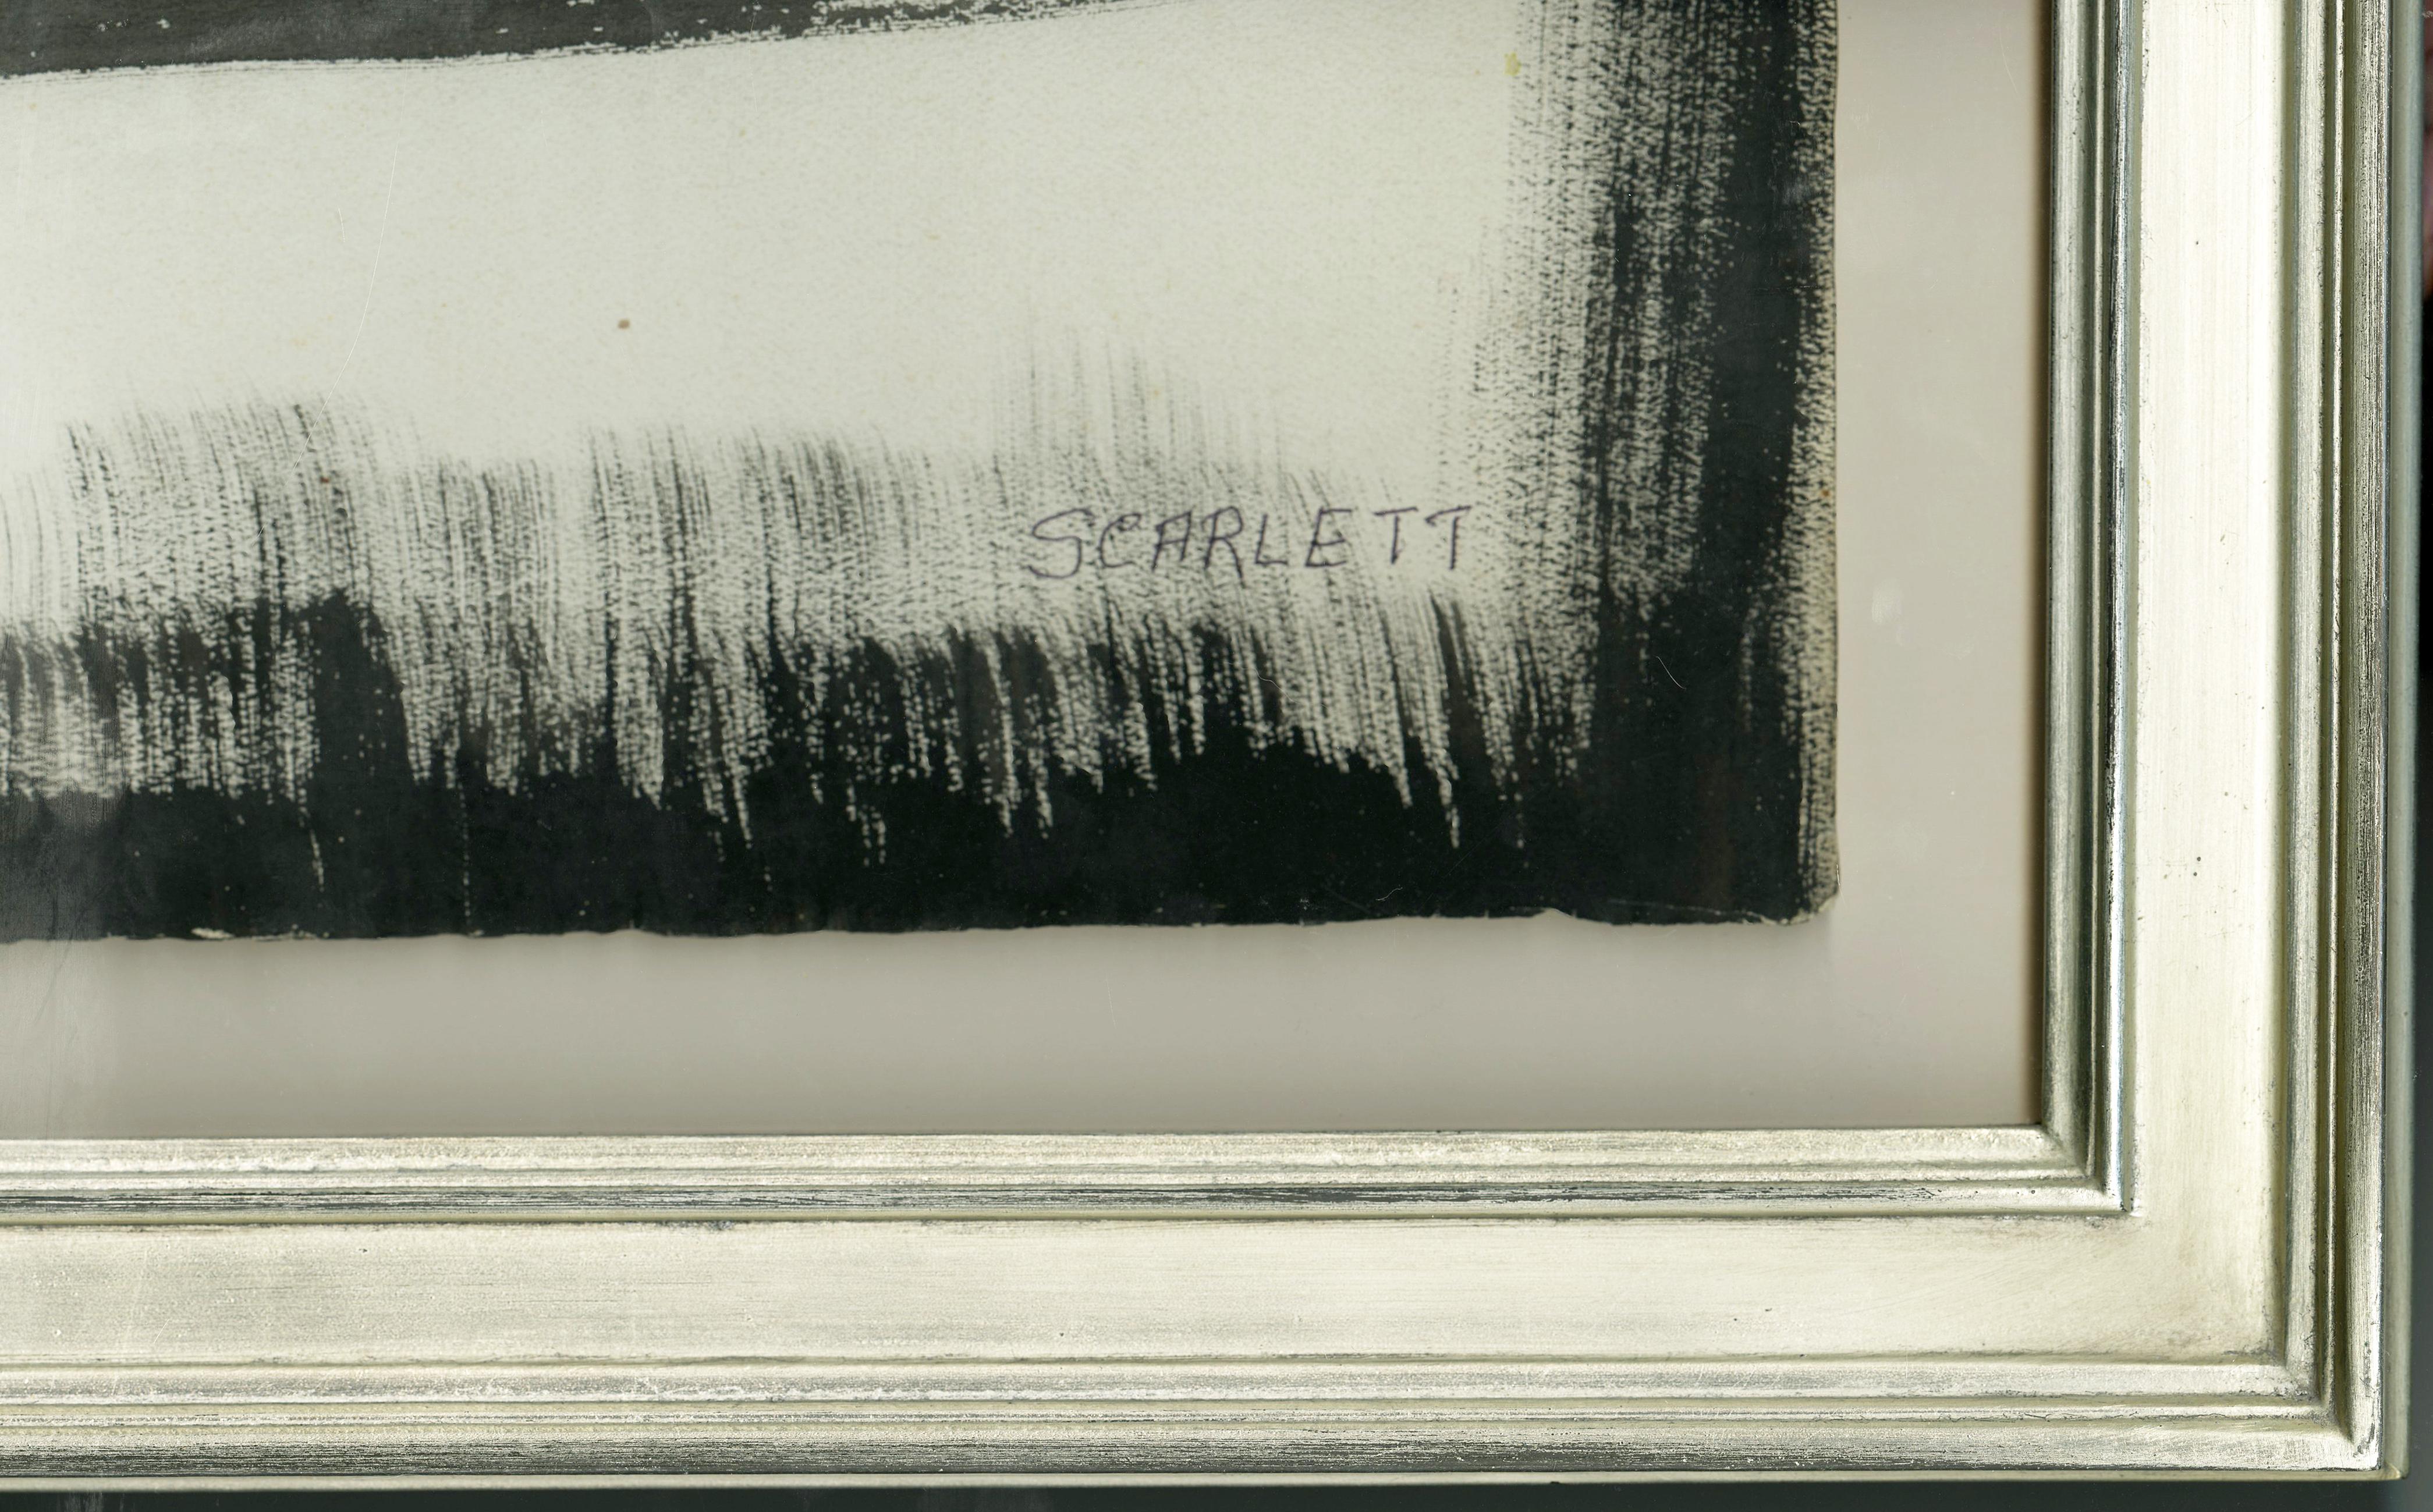 Ohne Titel (Abstraktion)
Tinte auf strukturiertem Papier, um 1958
Signiert unten rechts: Scarlett
Anmerkung: Ein seltenes Beispiel für den abstrakten expressionistischen Stil des Künstlers aus der Mitte bis Ende der 1950er Jahre.
Provenienz: